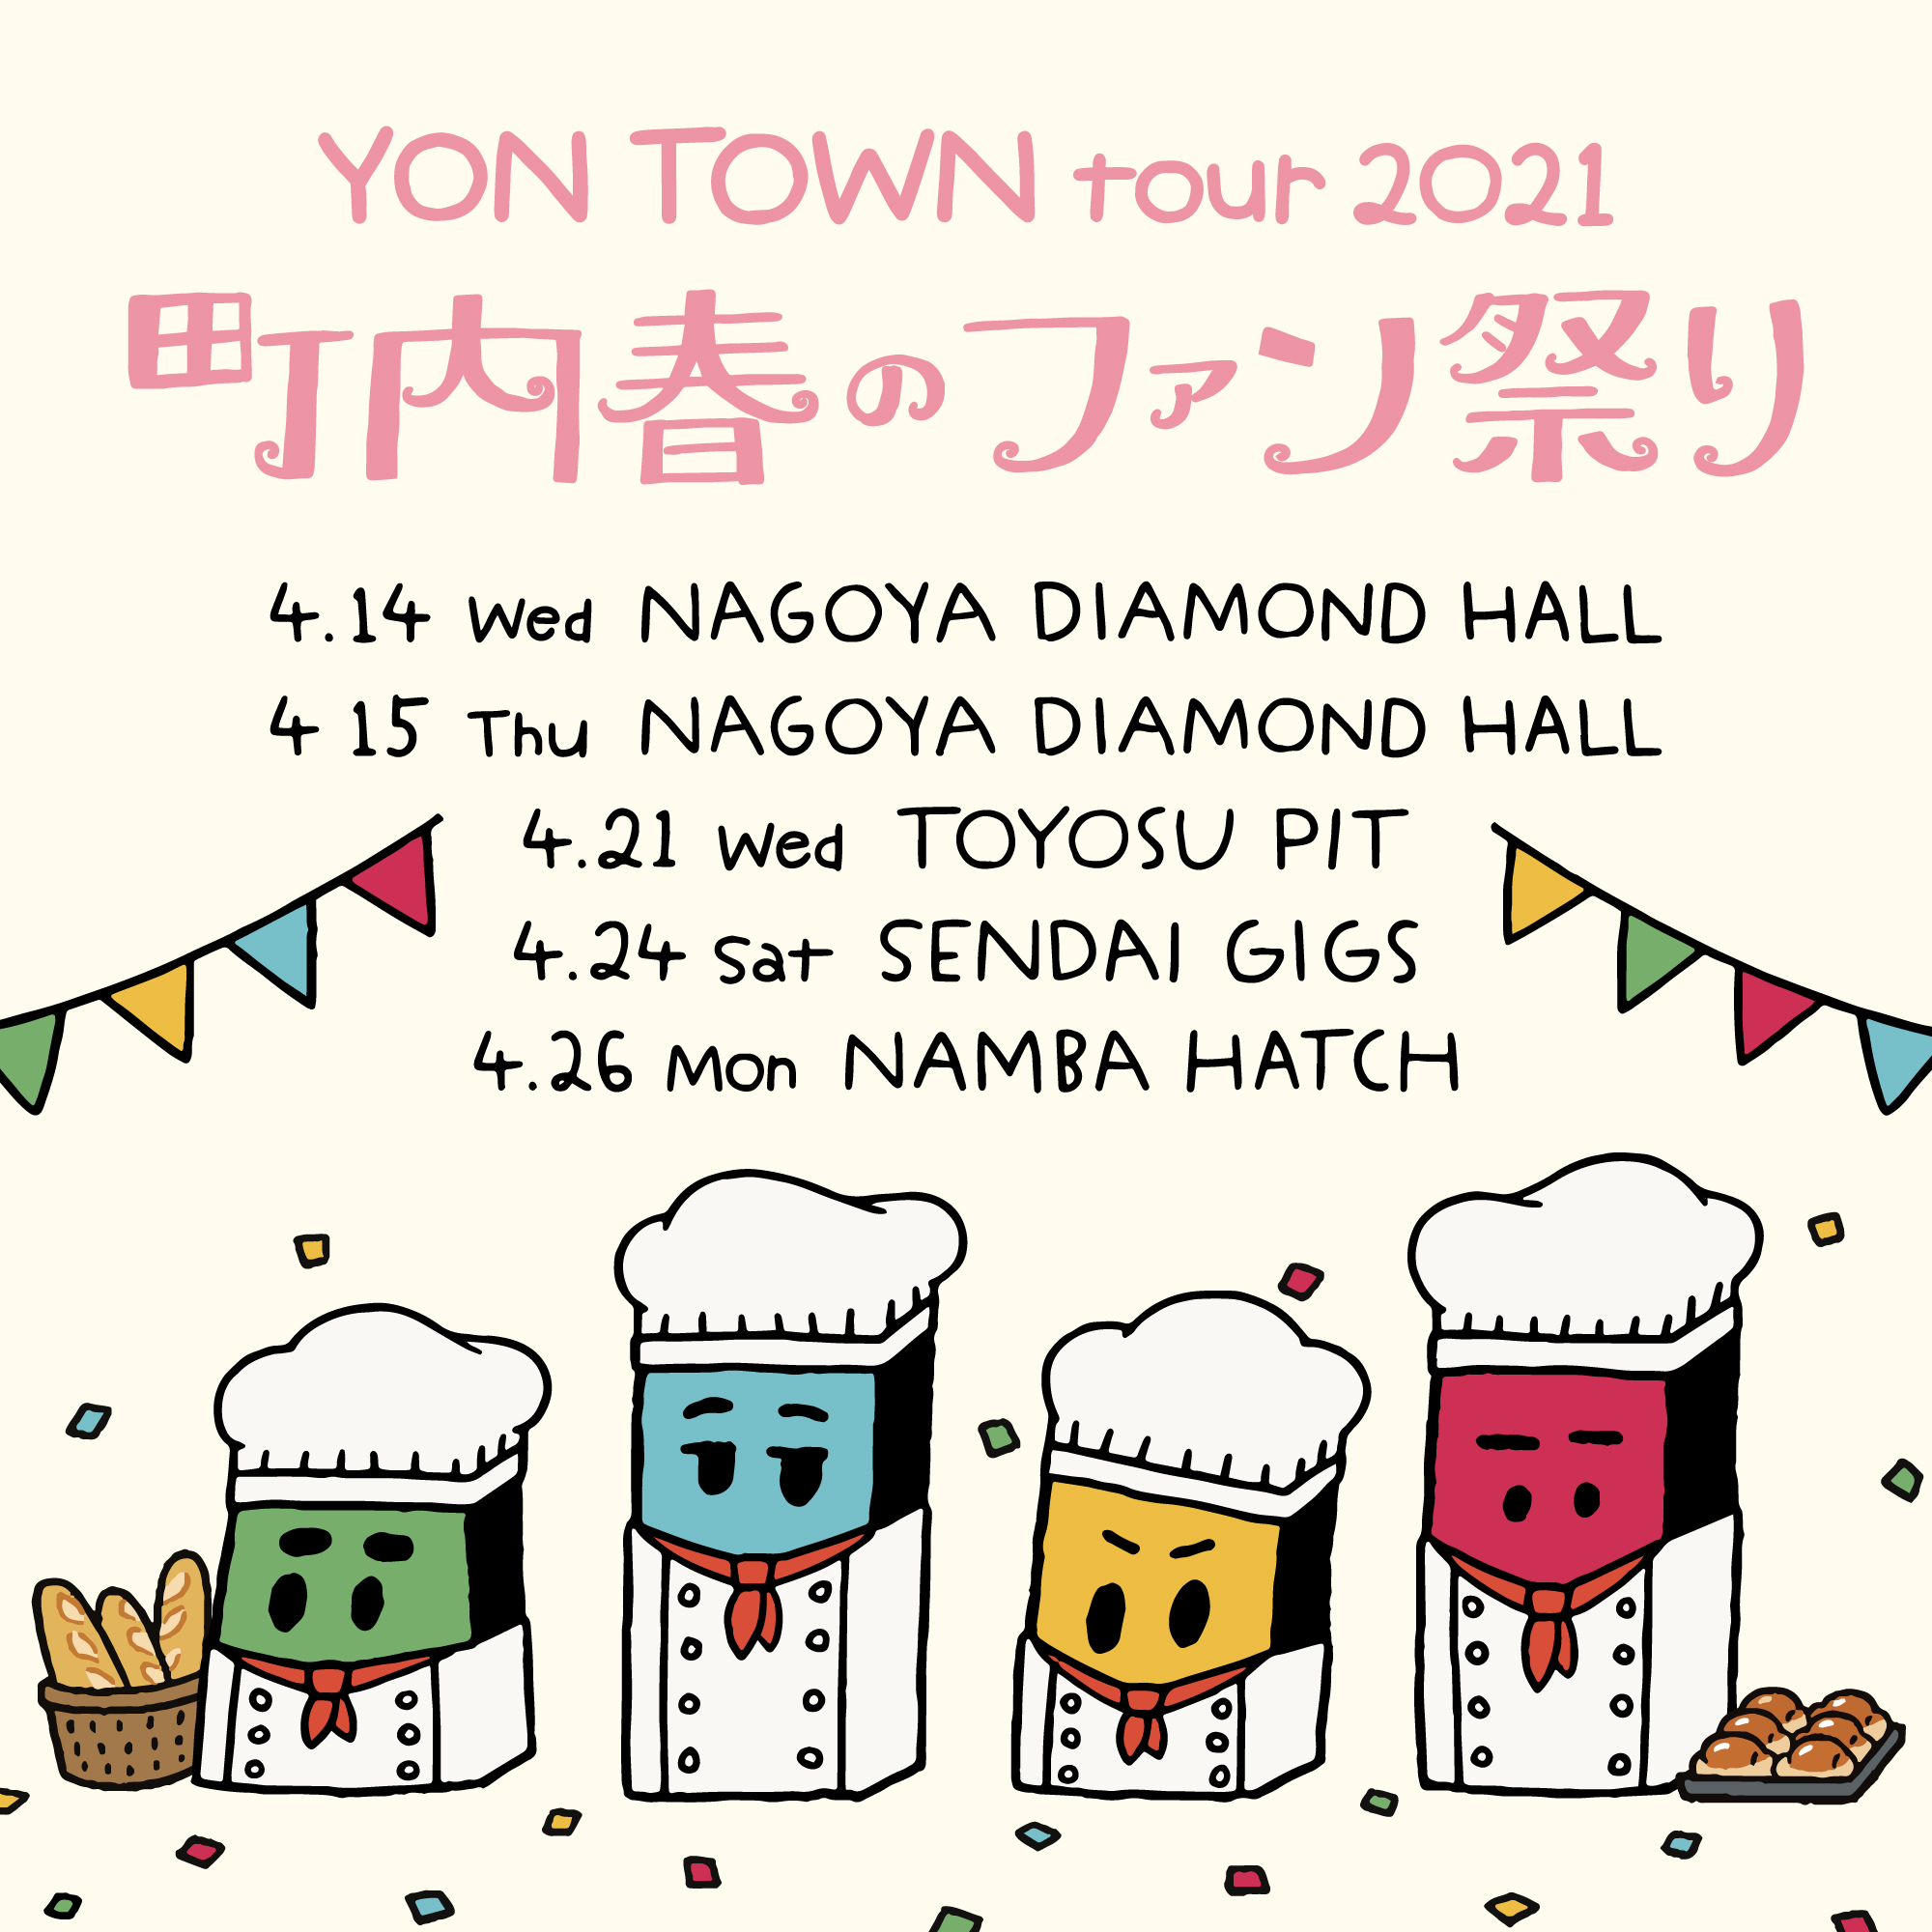 オフィシャルファンサイトYON TOWN 会員限定ツアー「YON TOWN tour 2021 ～町内春のファン祭り～」開催決定！